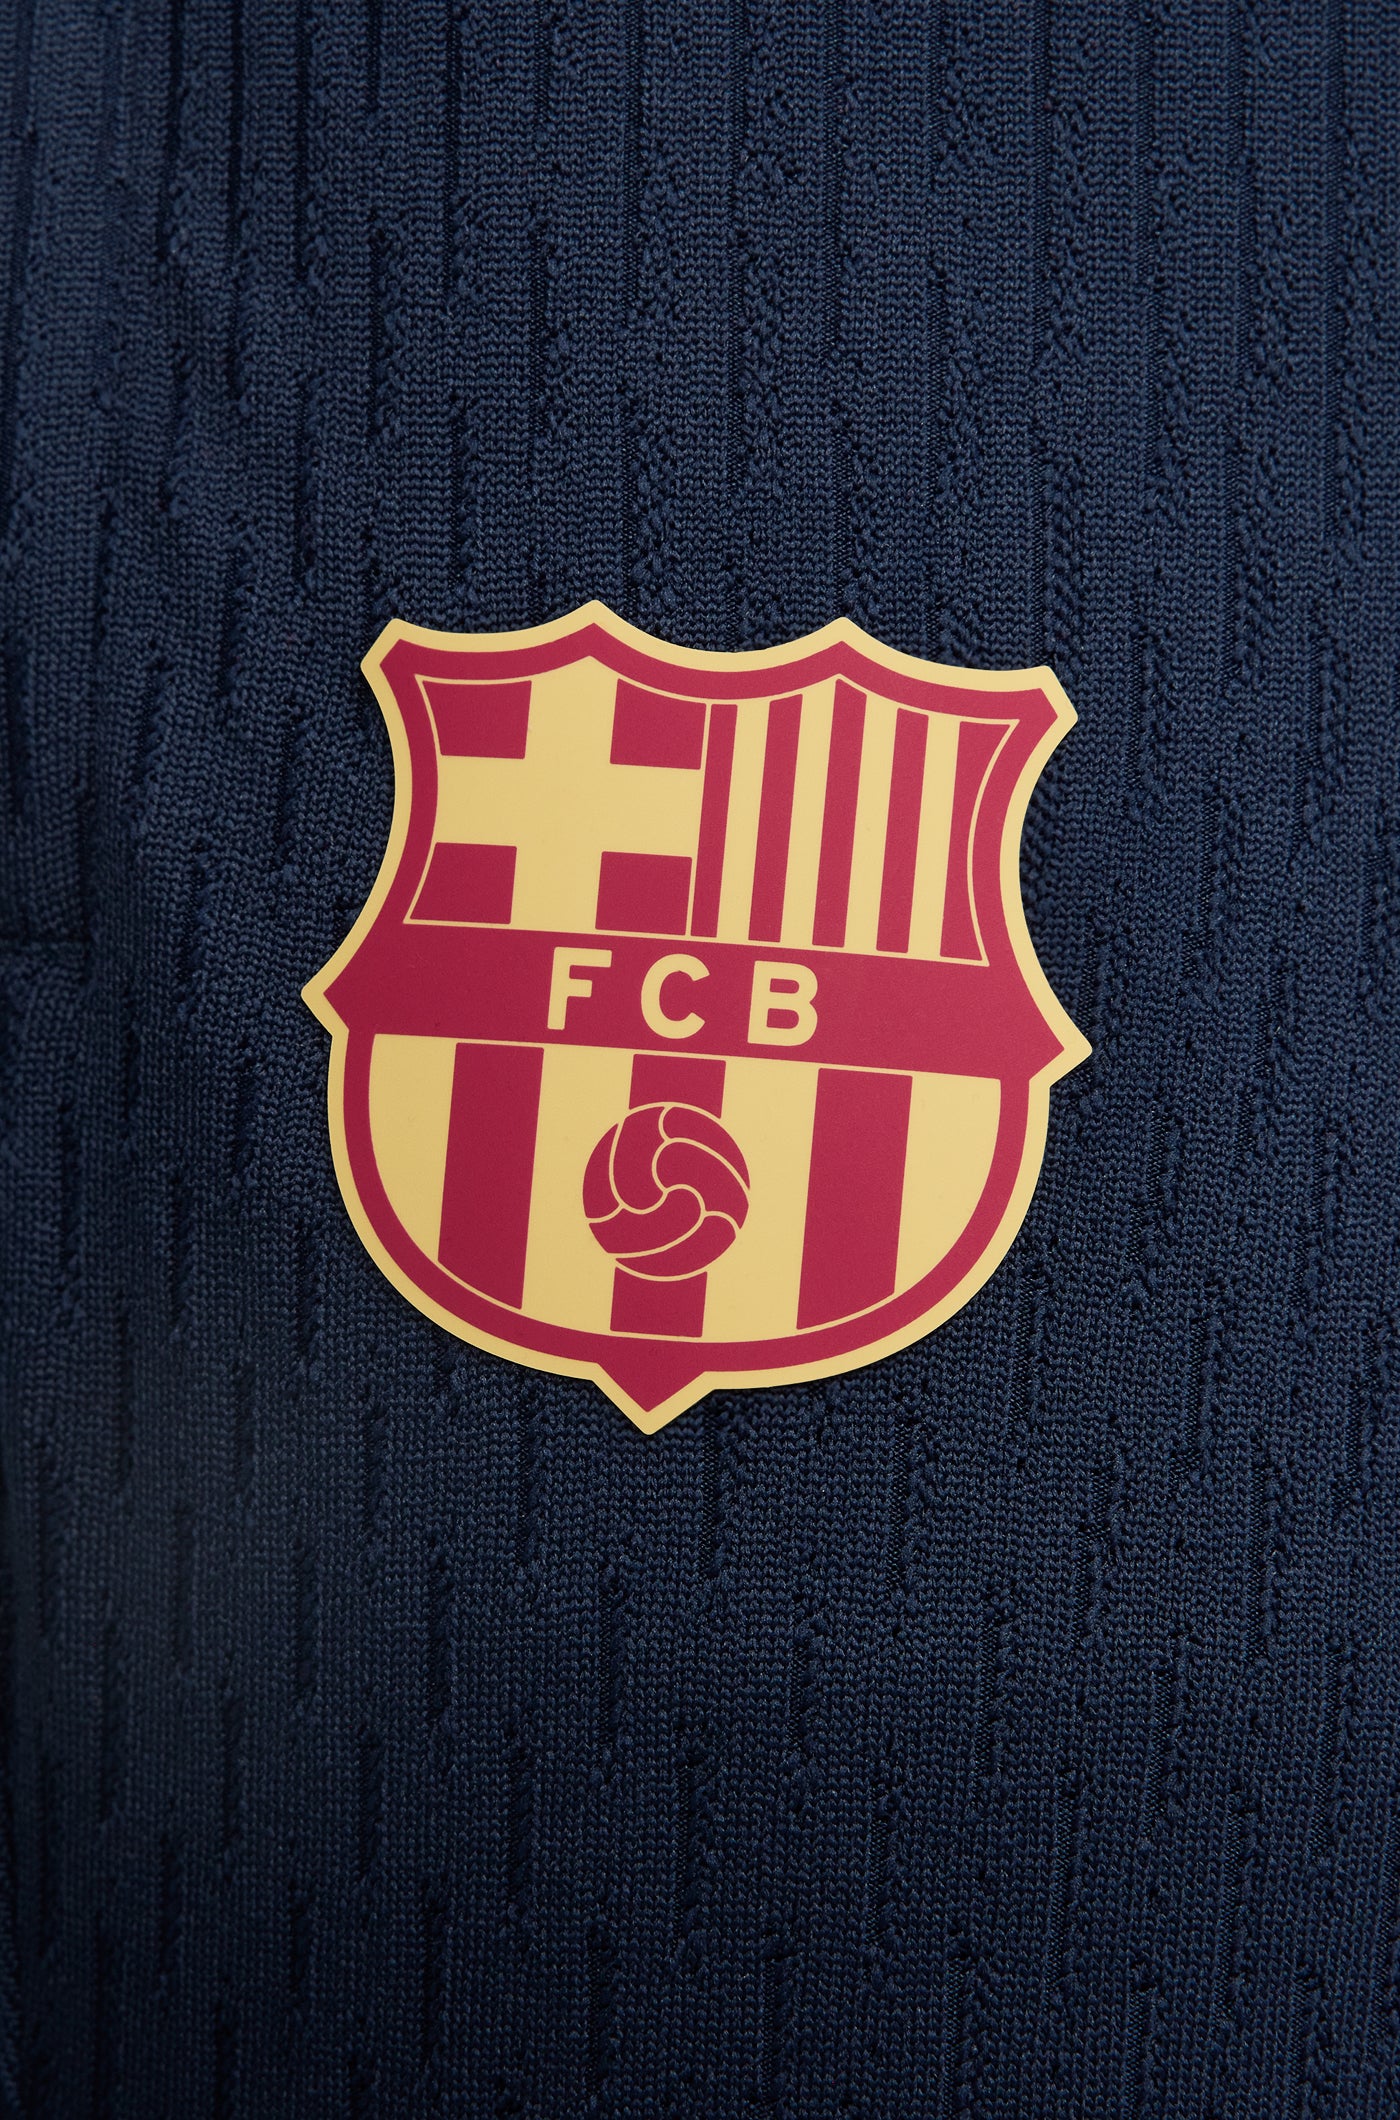 Pantalón de entrenamiento obsidiana FC Barcelona 23/24 - Edición Jugador